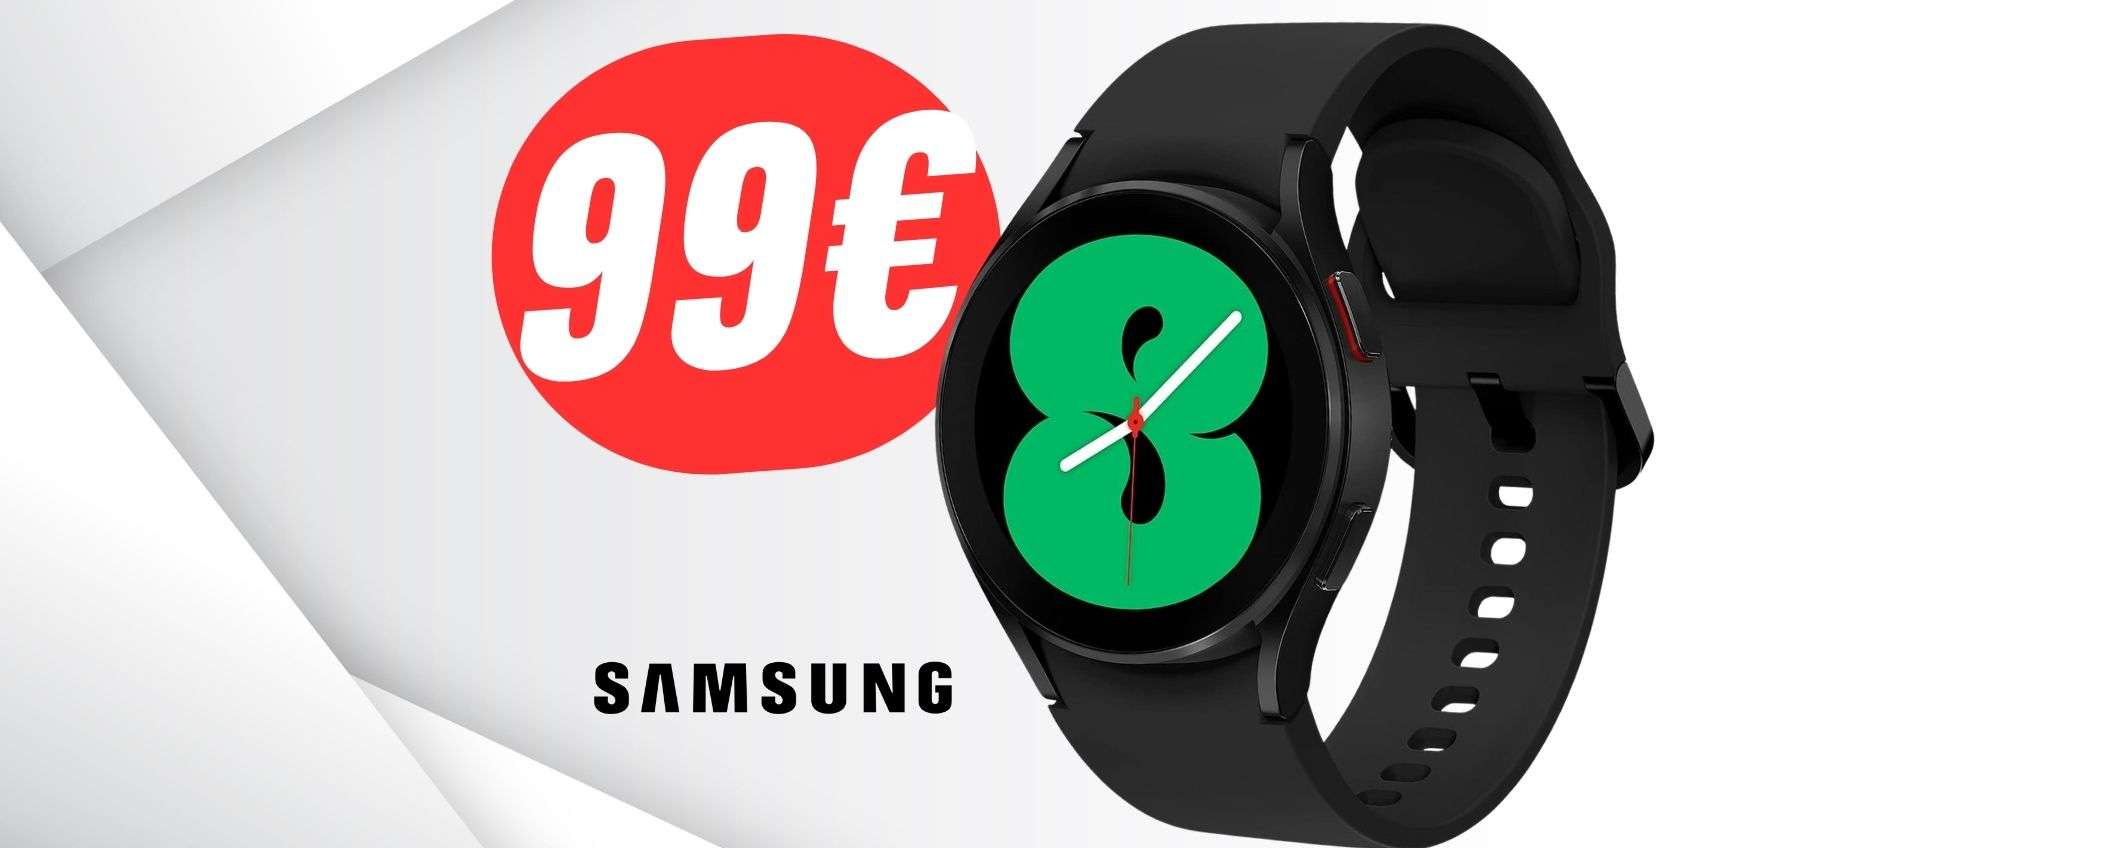 Smartwatch Samsung a 99€?! È la FOLLIA Amazon del giorno!